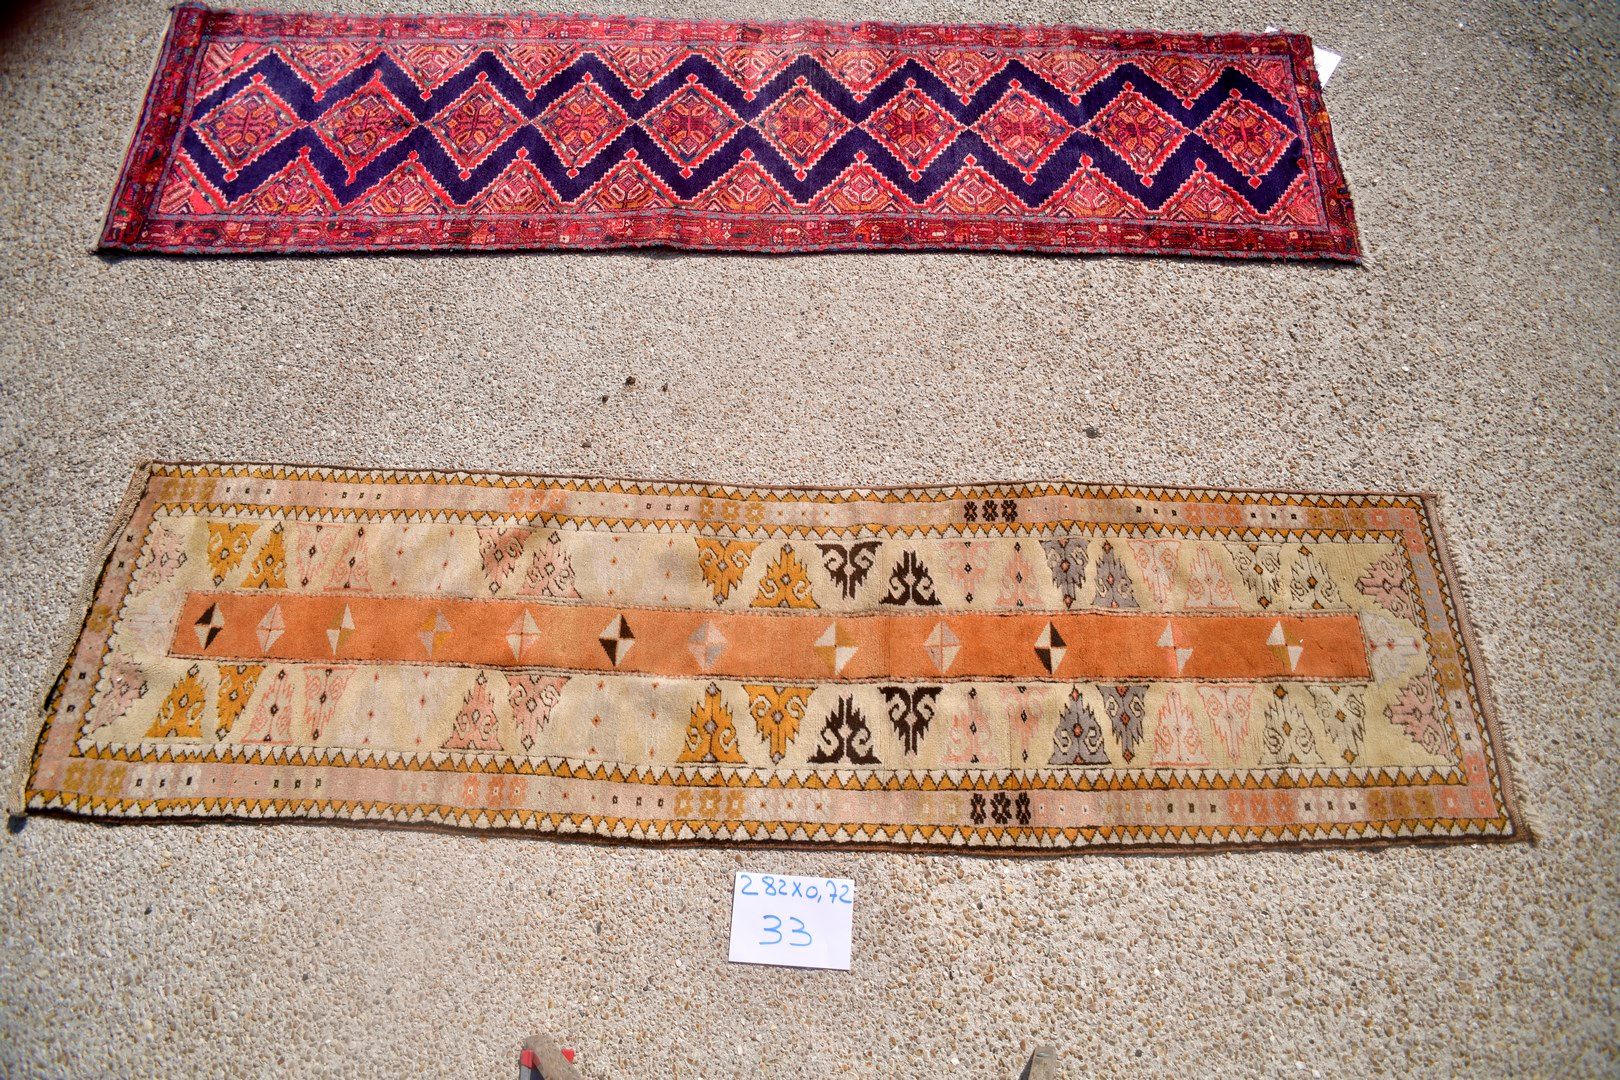 Null 梅拉斯画廊（土耳其），1970年。

羊毛基础上的羊毛丝绒。

米色的场地，鲑鱼粉色的带子，周围有风格化的钩子。

状况良好。

282x 72厘米